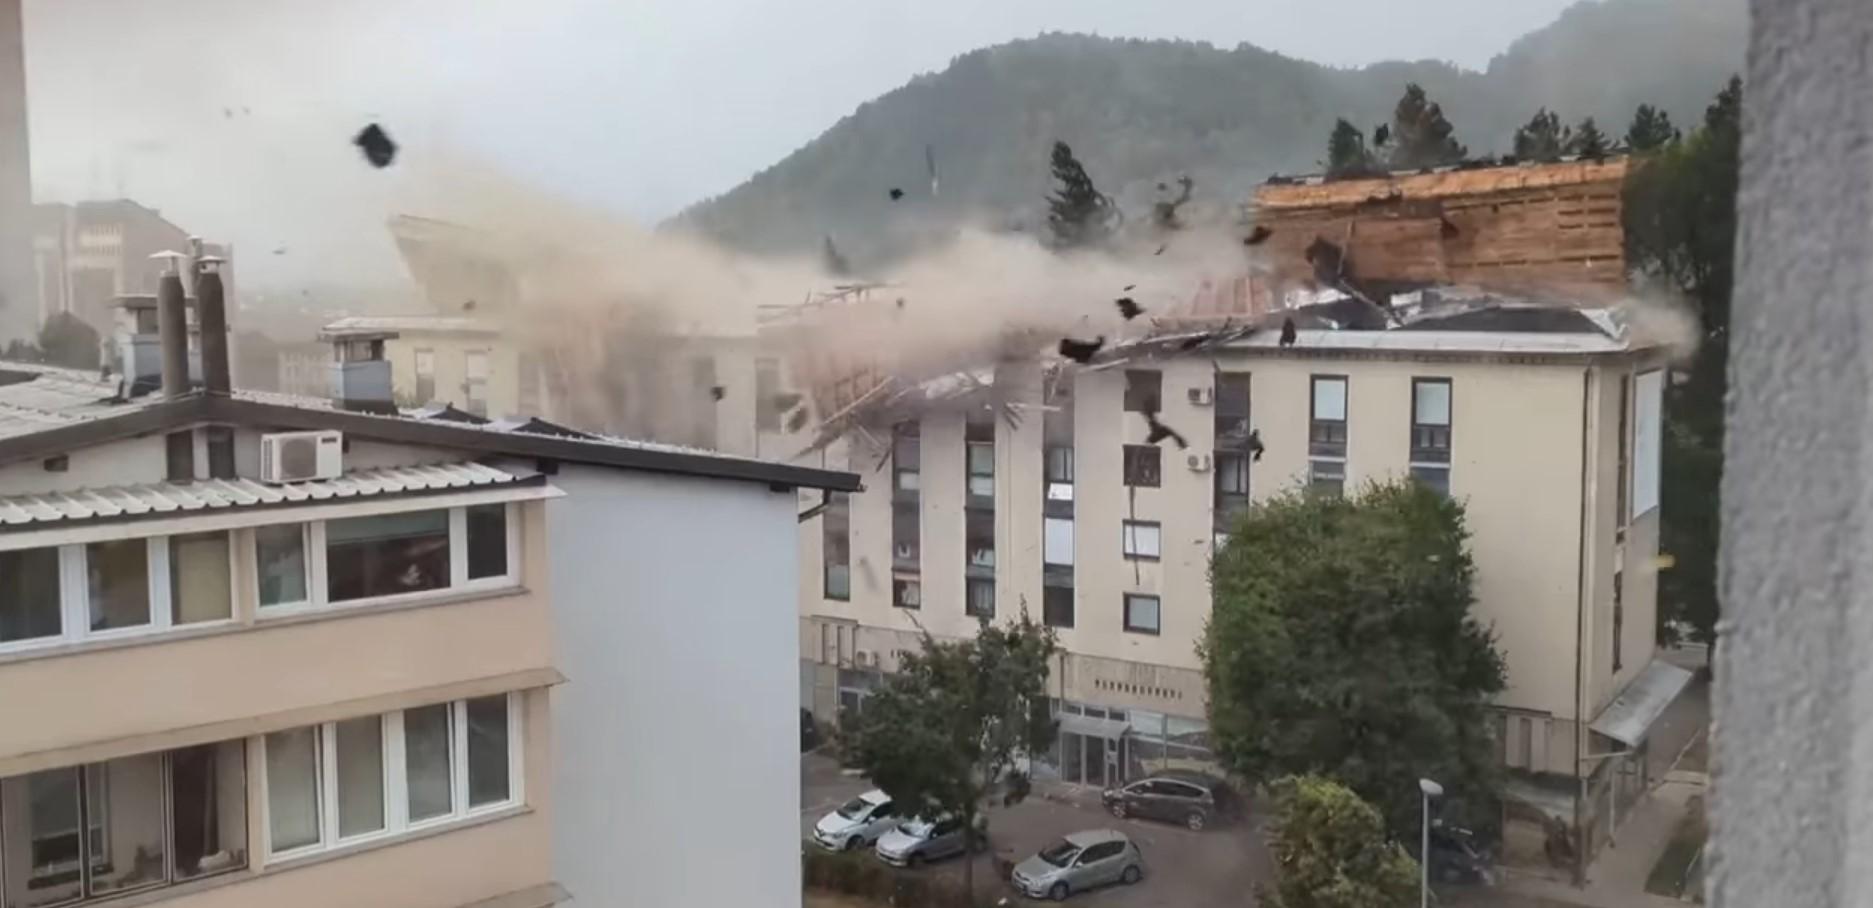 Video / Vjetar čupao krov sa zgrade, više osoba povrijeđeno